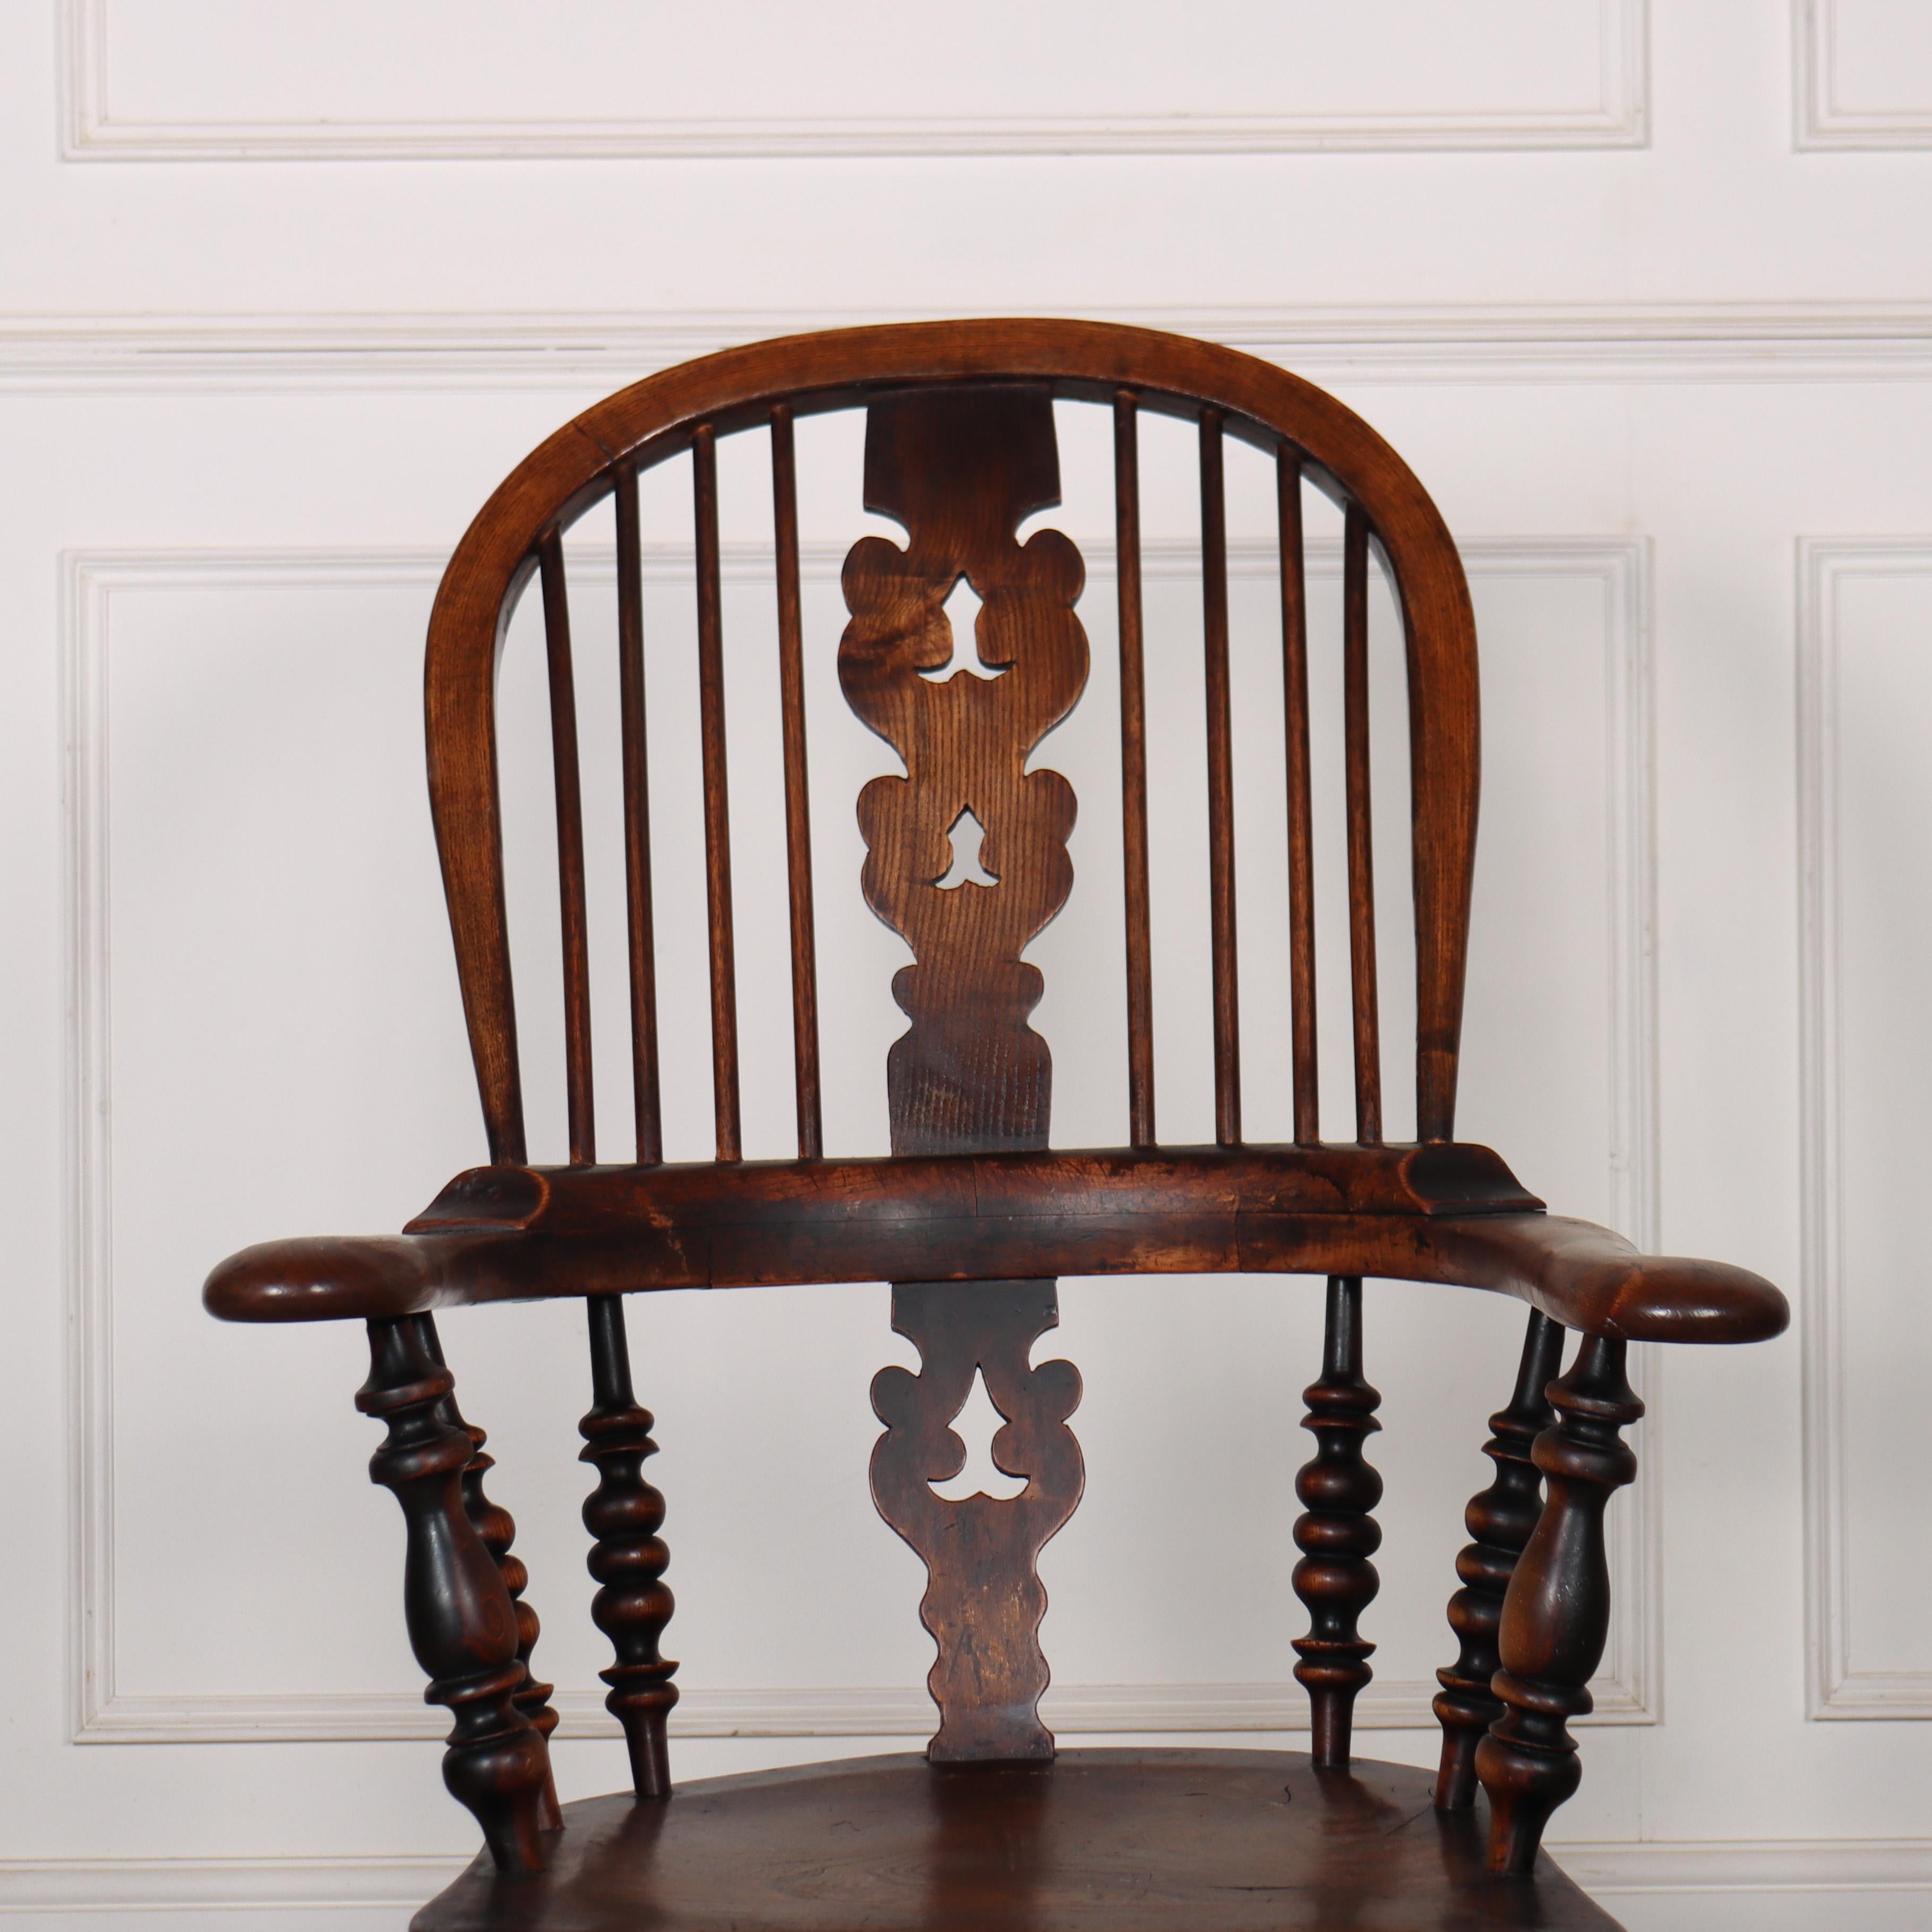 19. Jahrhundert Yorkshire Buche und Ulme breitarmiger Windsor-Stuhl. 1850.

Sitztiefe ist 16 Zoll, Sitzhöhe ist 17,5 Zoll

Referenz: 8128

Abmessungen
25,5 Zoll (65 cm) breit
26,5 Zoll (67 cm) tief
44,5 Zoll (113 cm) hoch